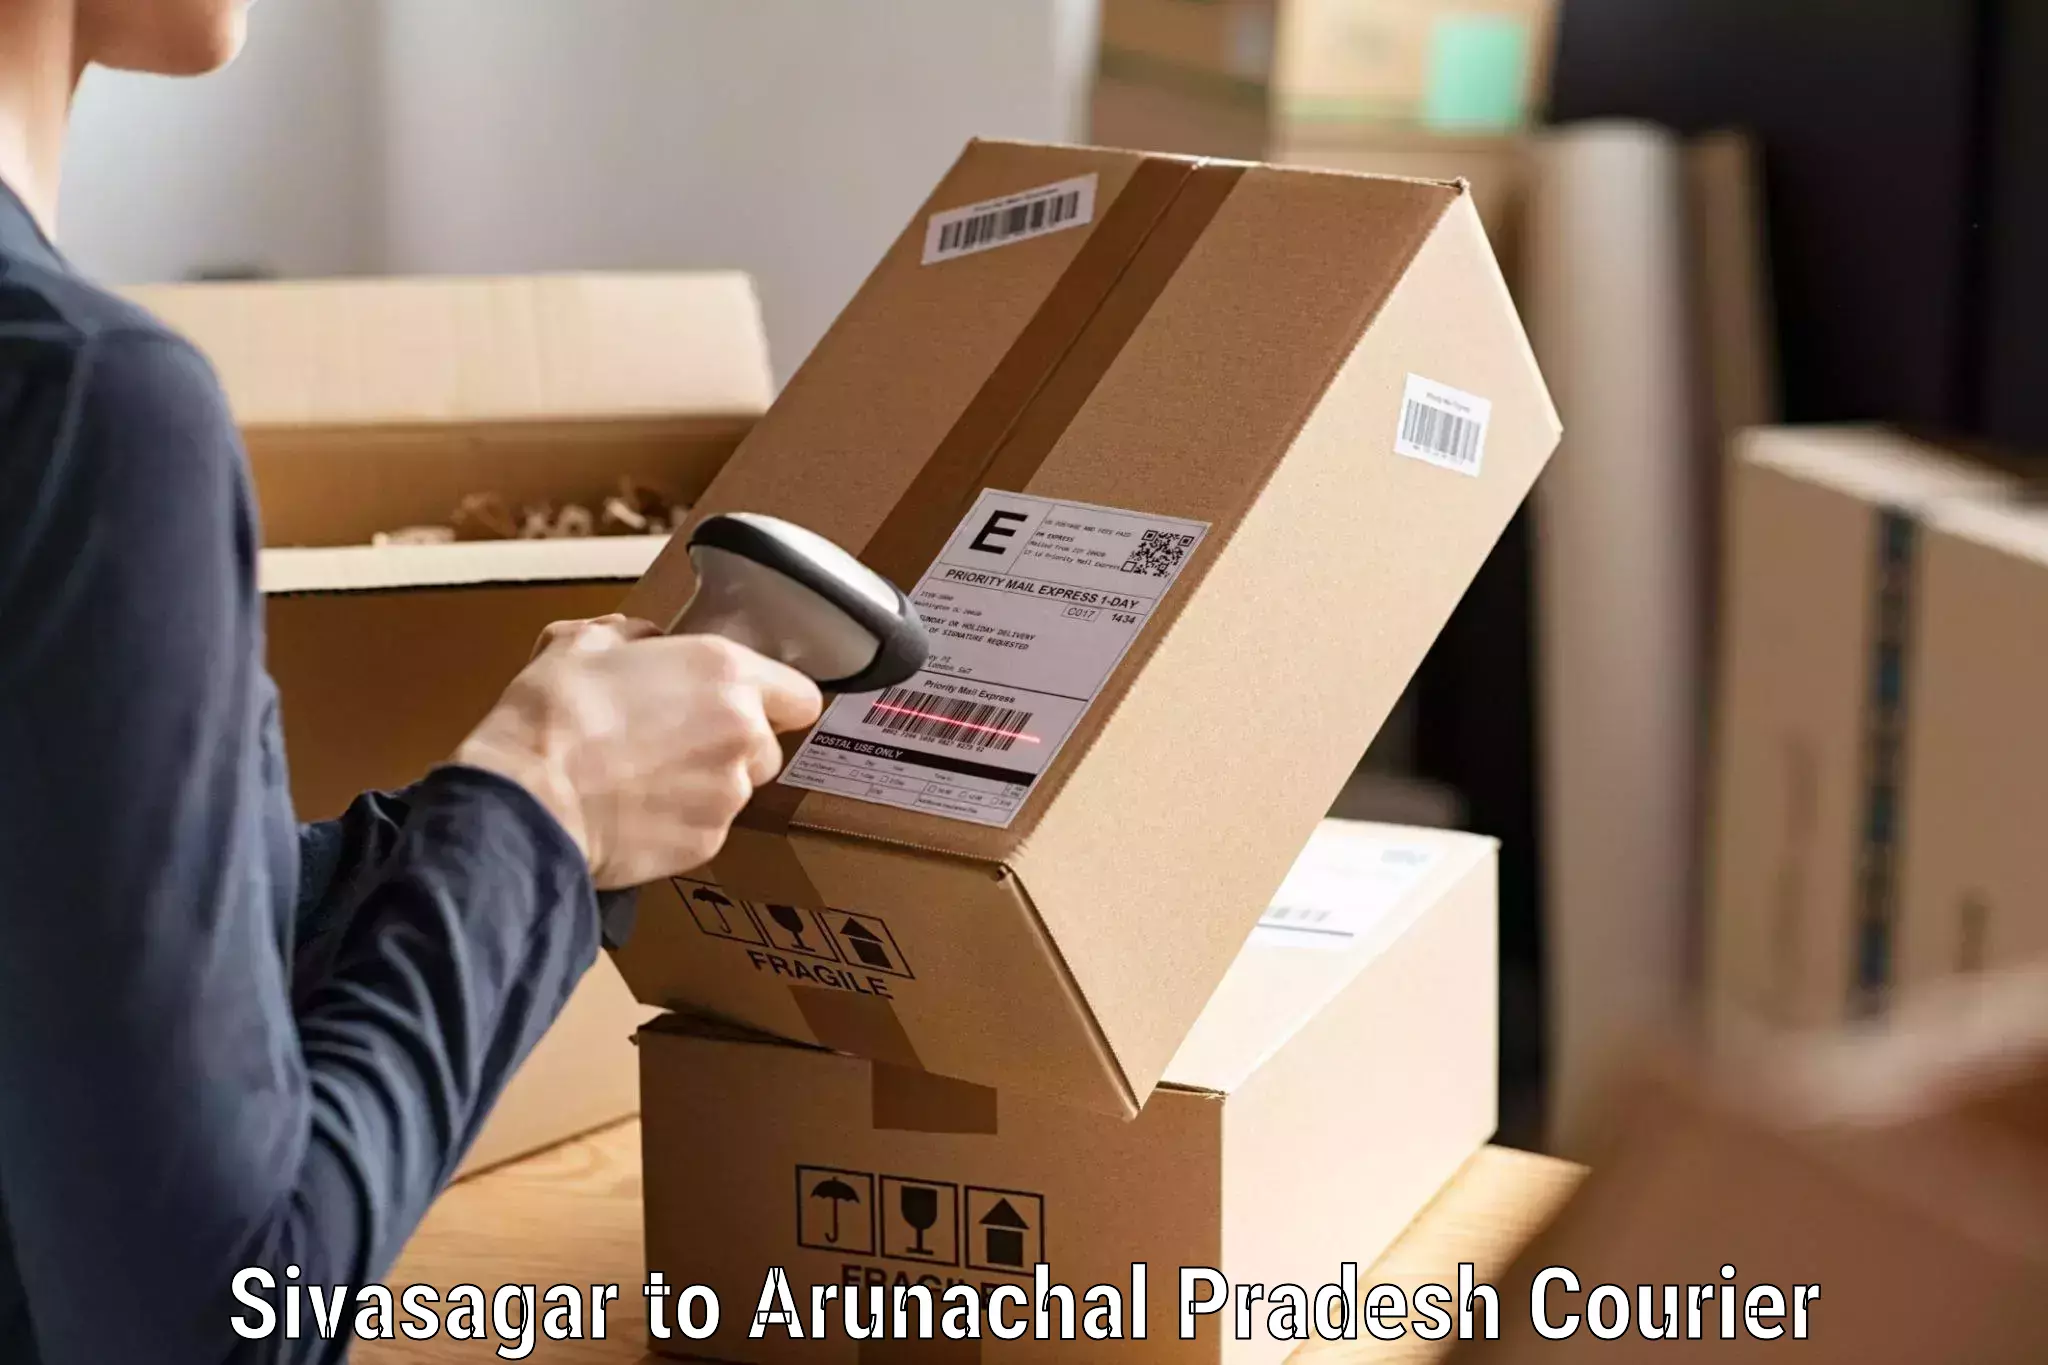 Premium courier services Sivasagar to Arunachal Pradesh